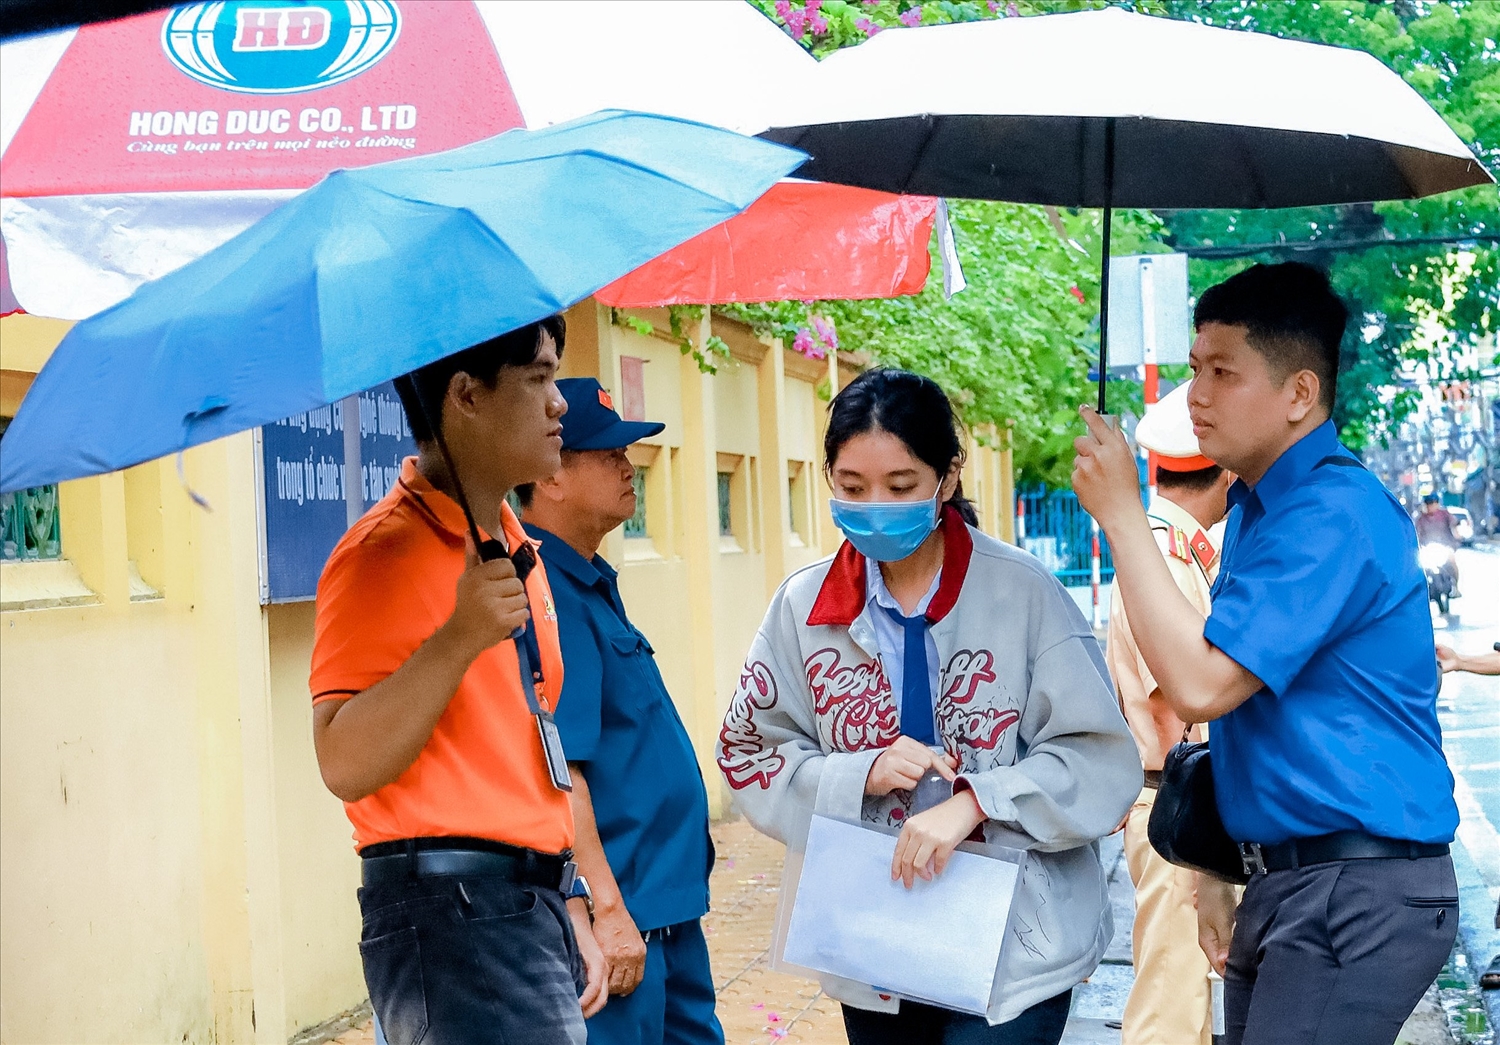 Sáng nay TP Cần Thơ có mưa nhỏ, các thí sinh đến điểm thi Trường THPT Châu Văn Liêm, quận Ninh Kiều được các tình nguyện viên tiếp sức mùa thi hỗ trợ che ô từ ngoài cổng để vào điểm th